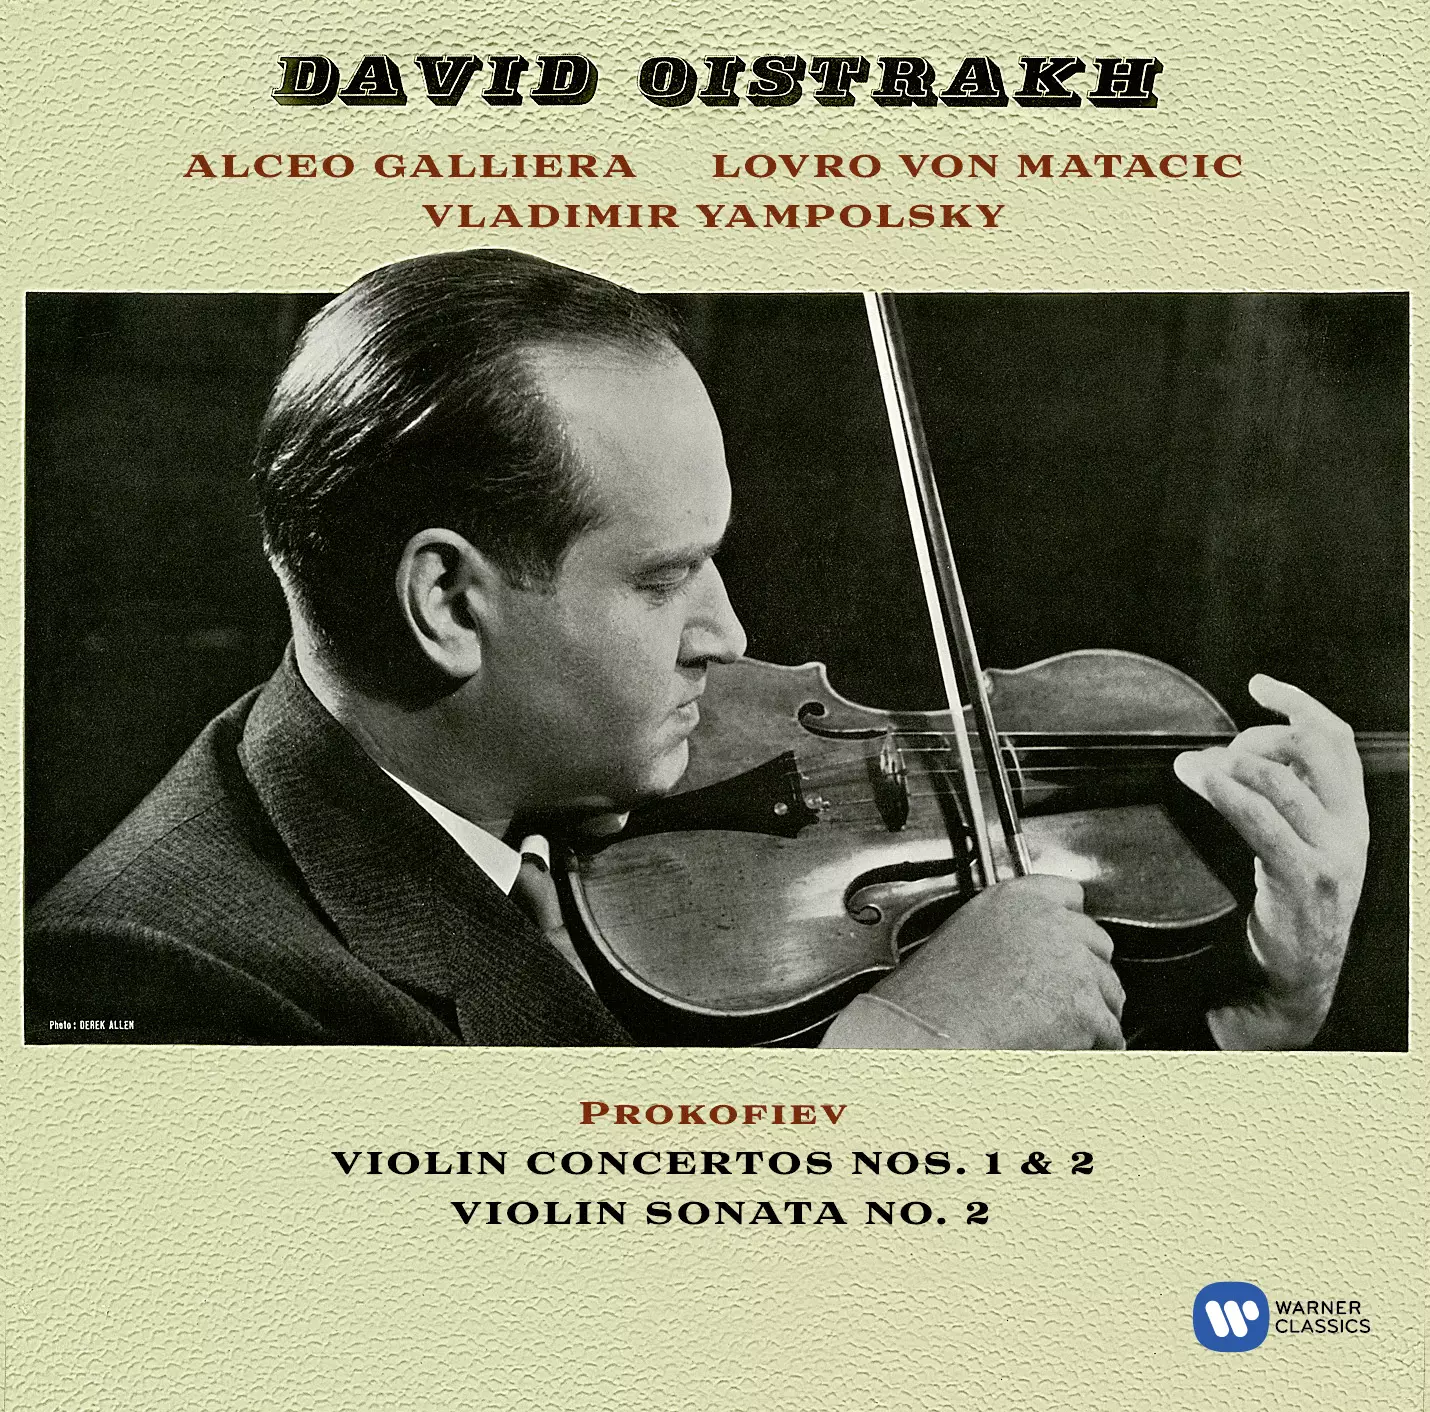 Prokofiev: Violin Concertos 1-2, Violin Sonata No.2